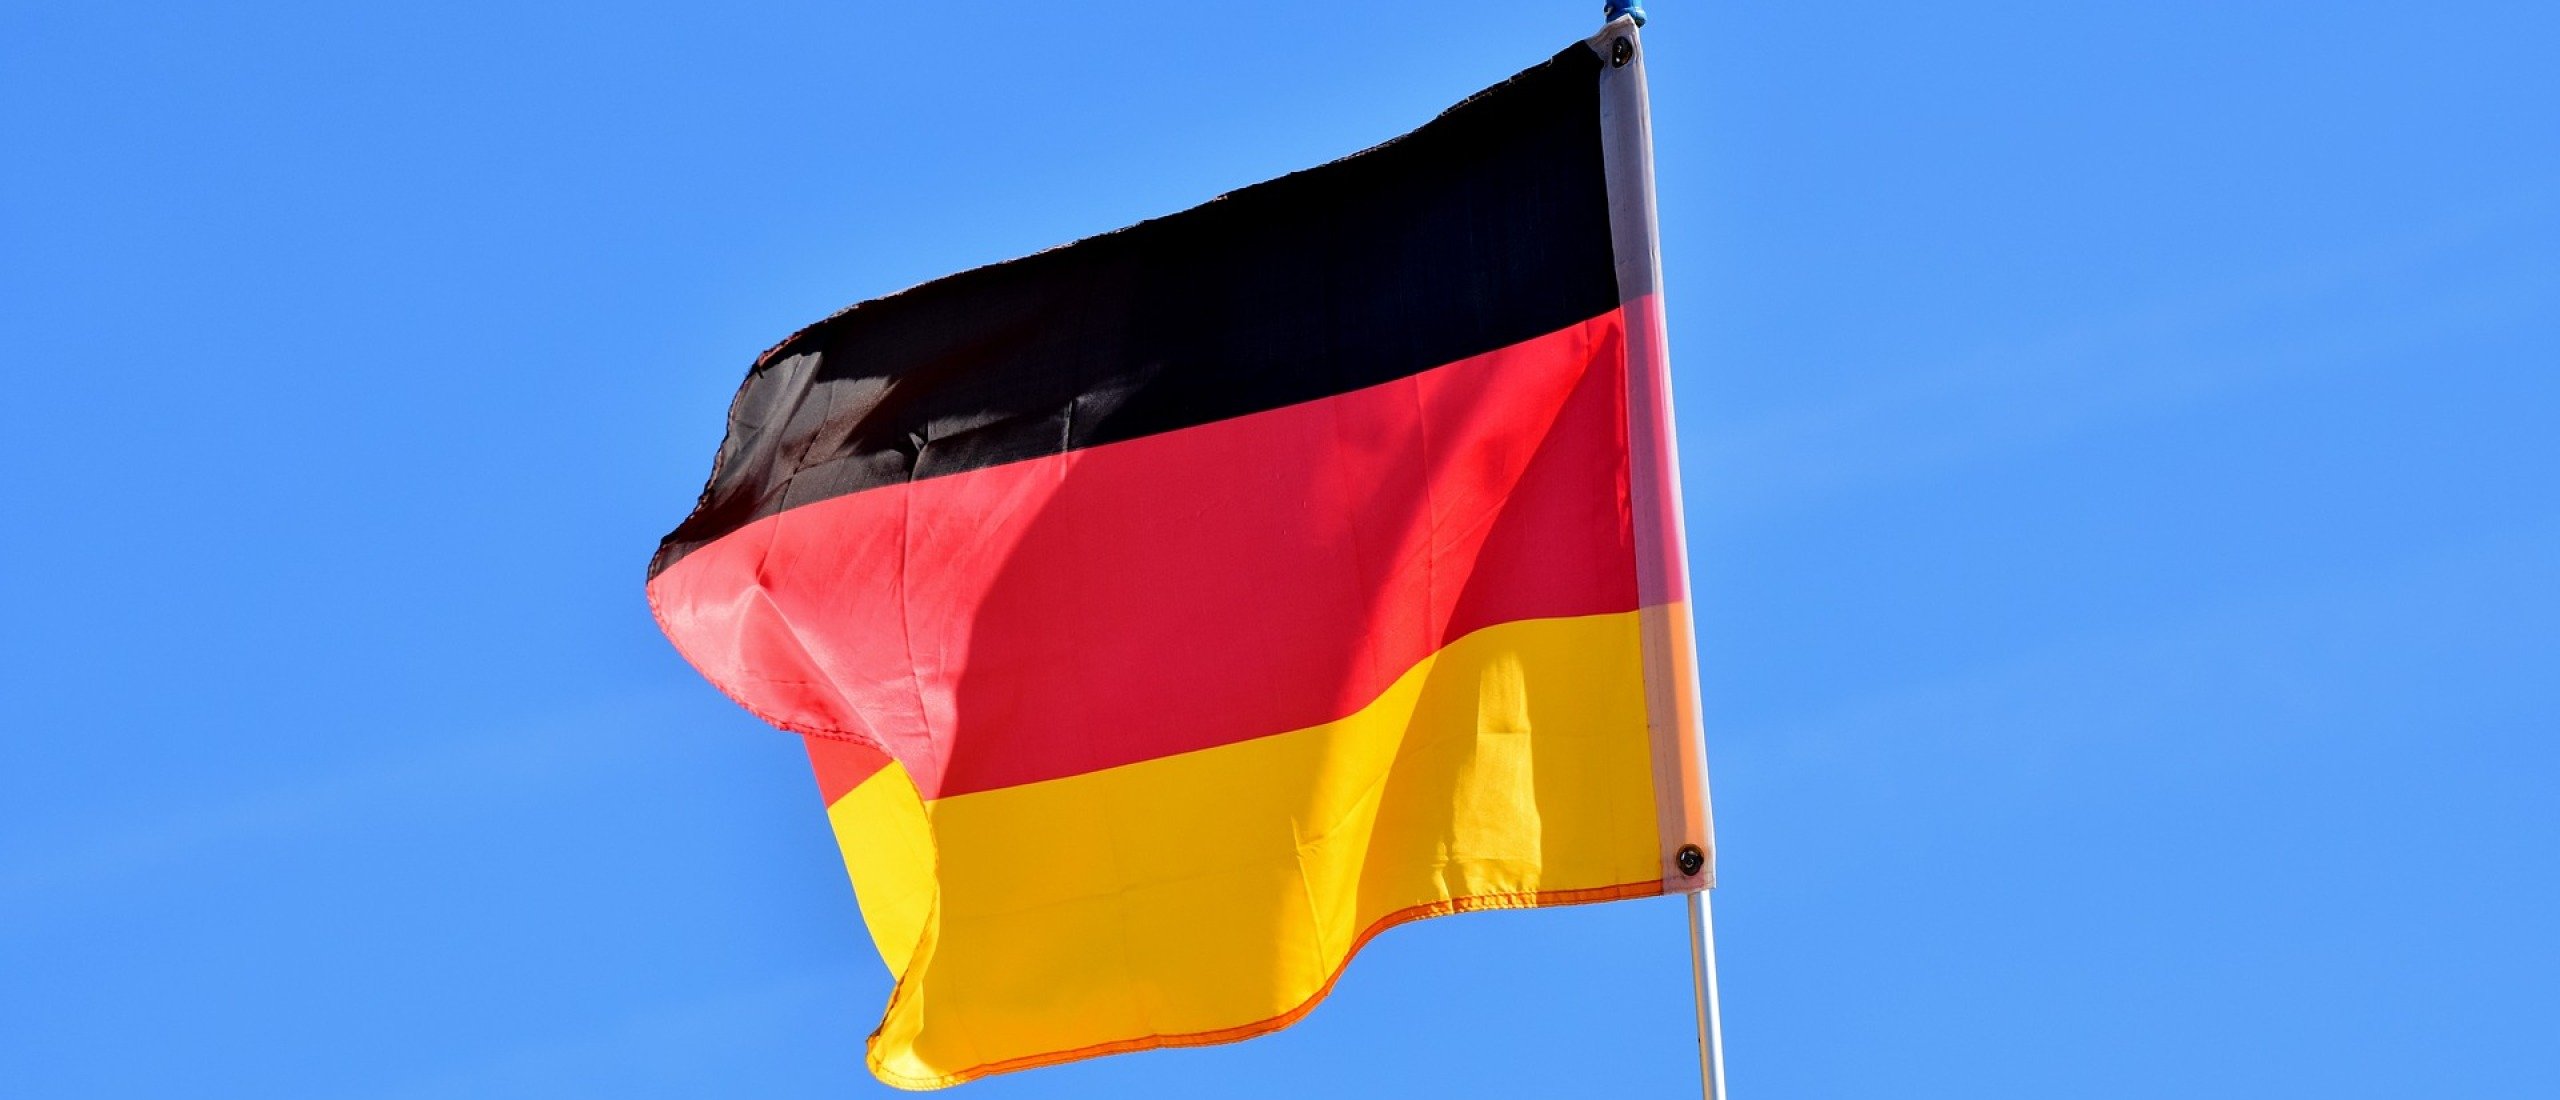 Webshop vertalen naar het Duits? 6 tips voor een succesvolle Duitse webshop!